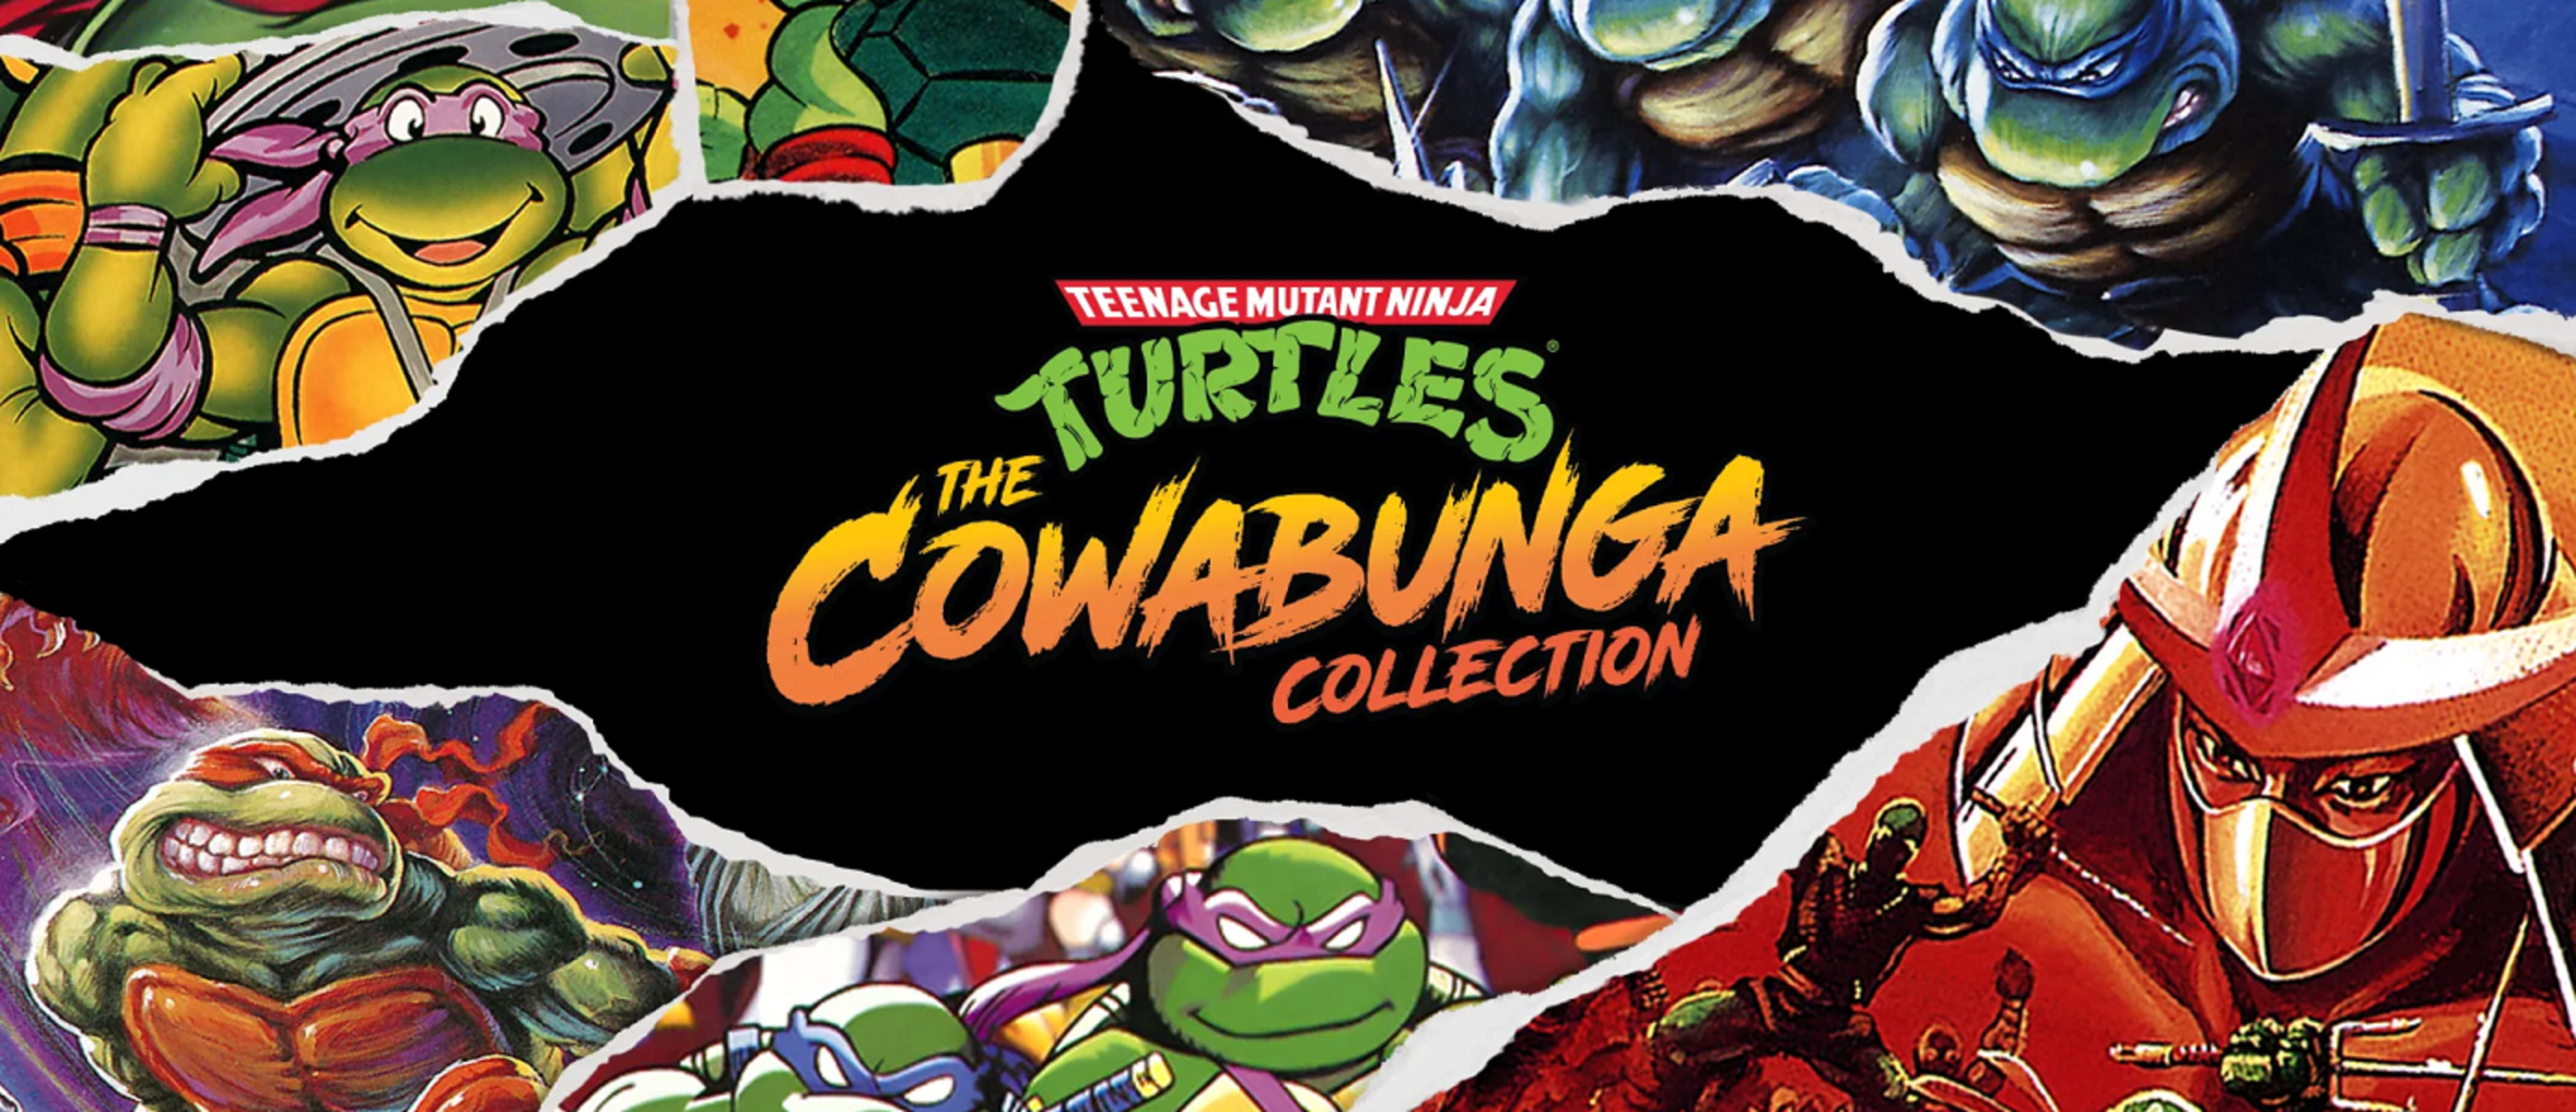 Turtles cowabunga collection. Cowabunga Черепашки ниндзя. Черепашки ниндзя сега. Черепашки ниндзя 2022. Teenage Mutant Ninja Turtles: the Cowabunga collection ключ.